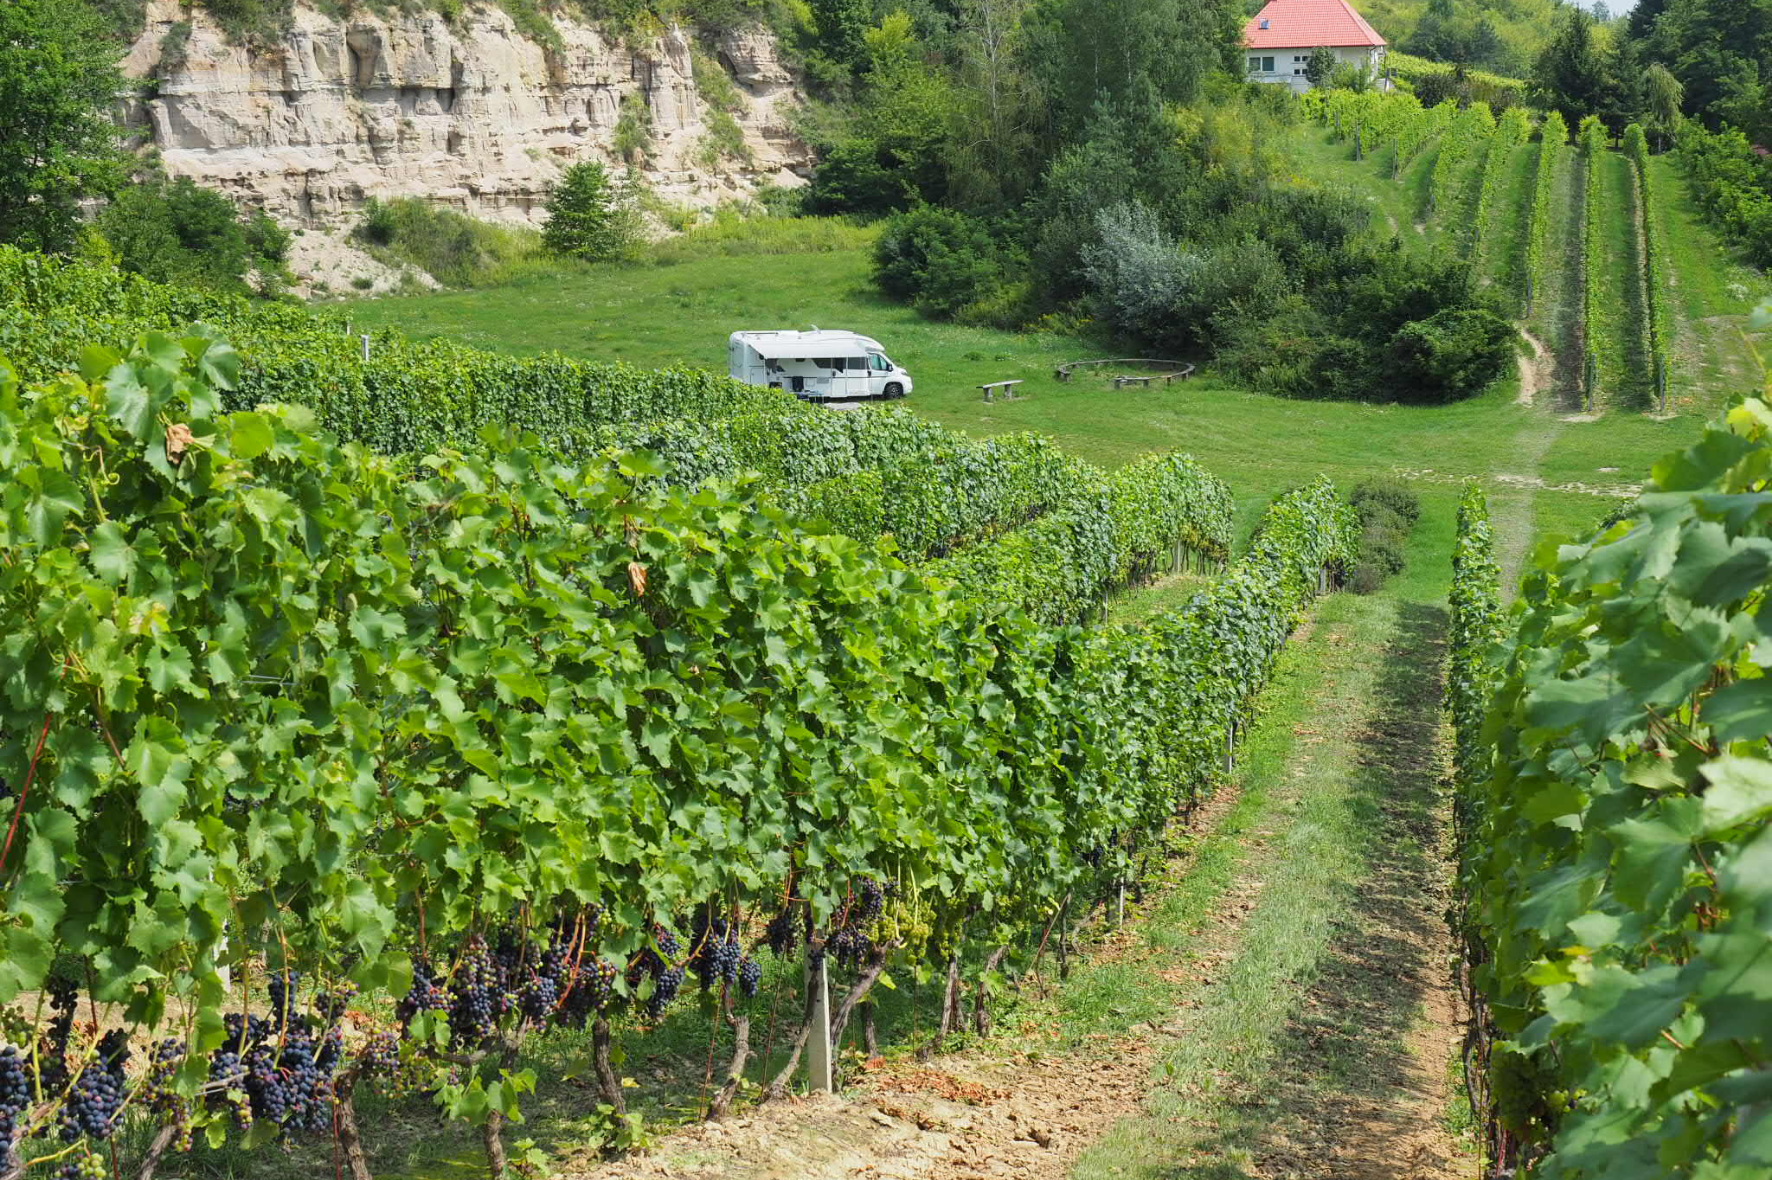 In a camper van to the vineyard – main image